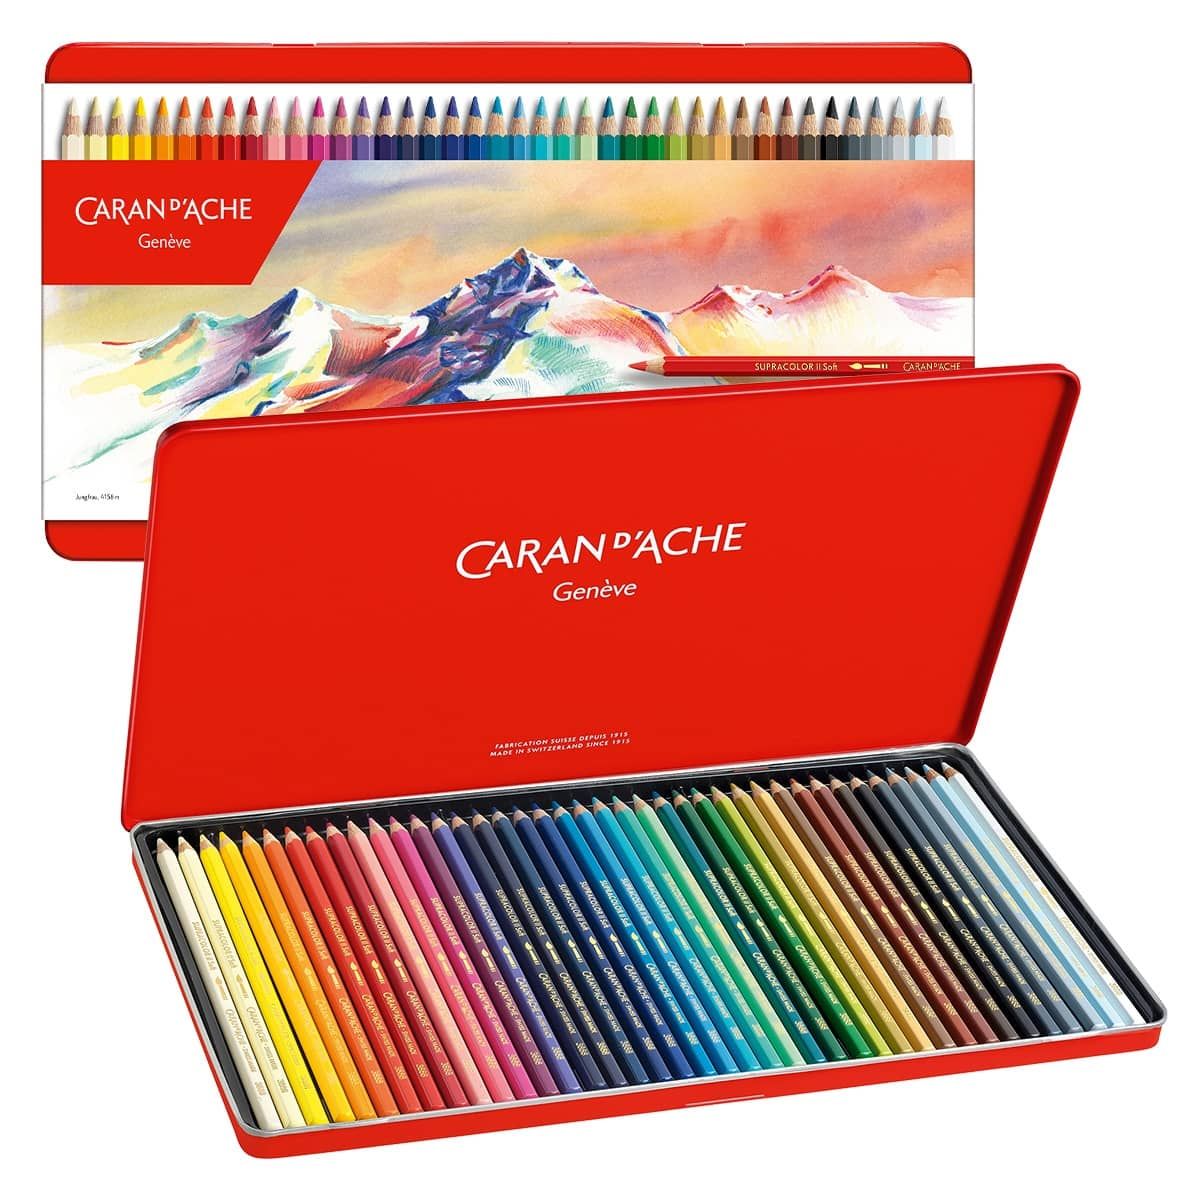 Caran d'Ache Supracolor Soft Aquarelle Watercolor Pencil Sets 